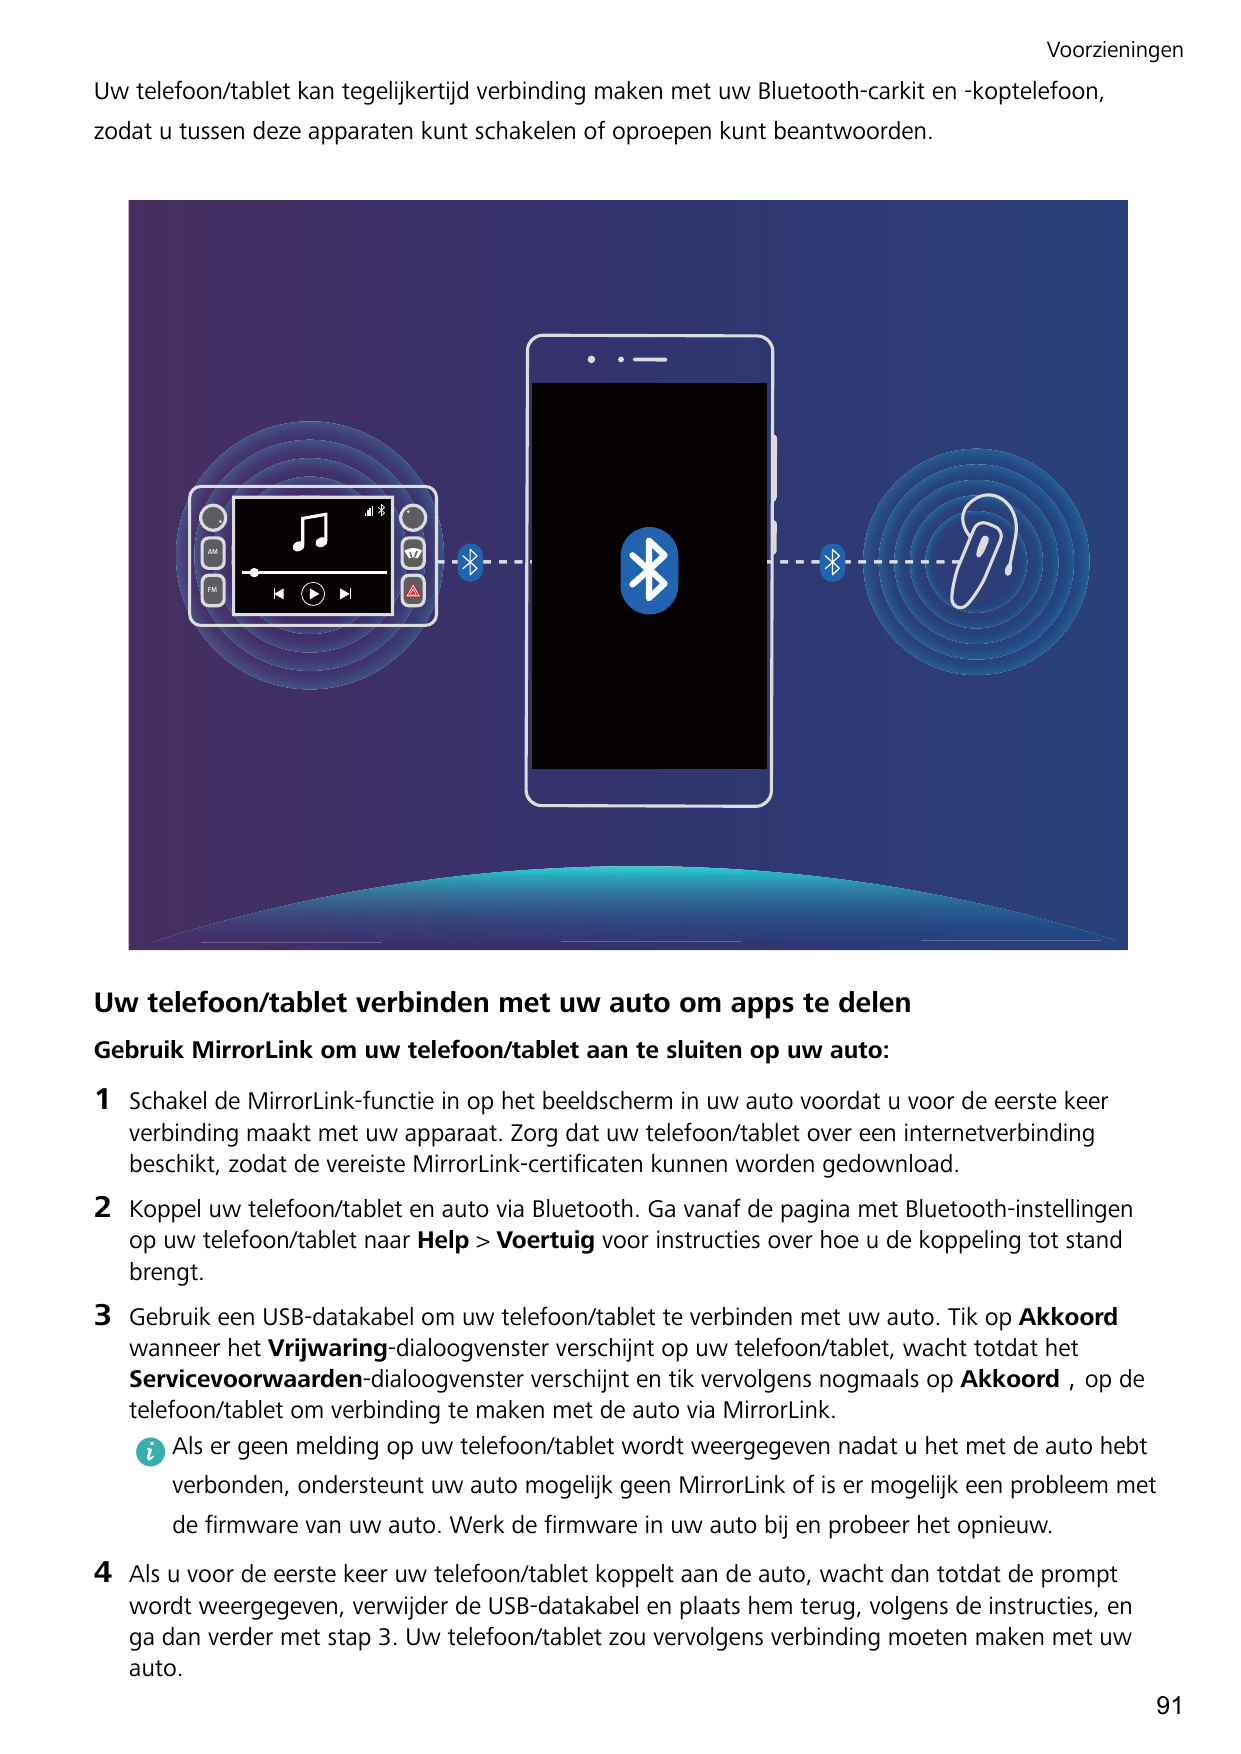 VoorzieningenUw telefoon/tablet kan tegelijkertijd verbinding maken met uw Bluetooth-carkit en -koptelefoon,zodat u tussen deze 